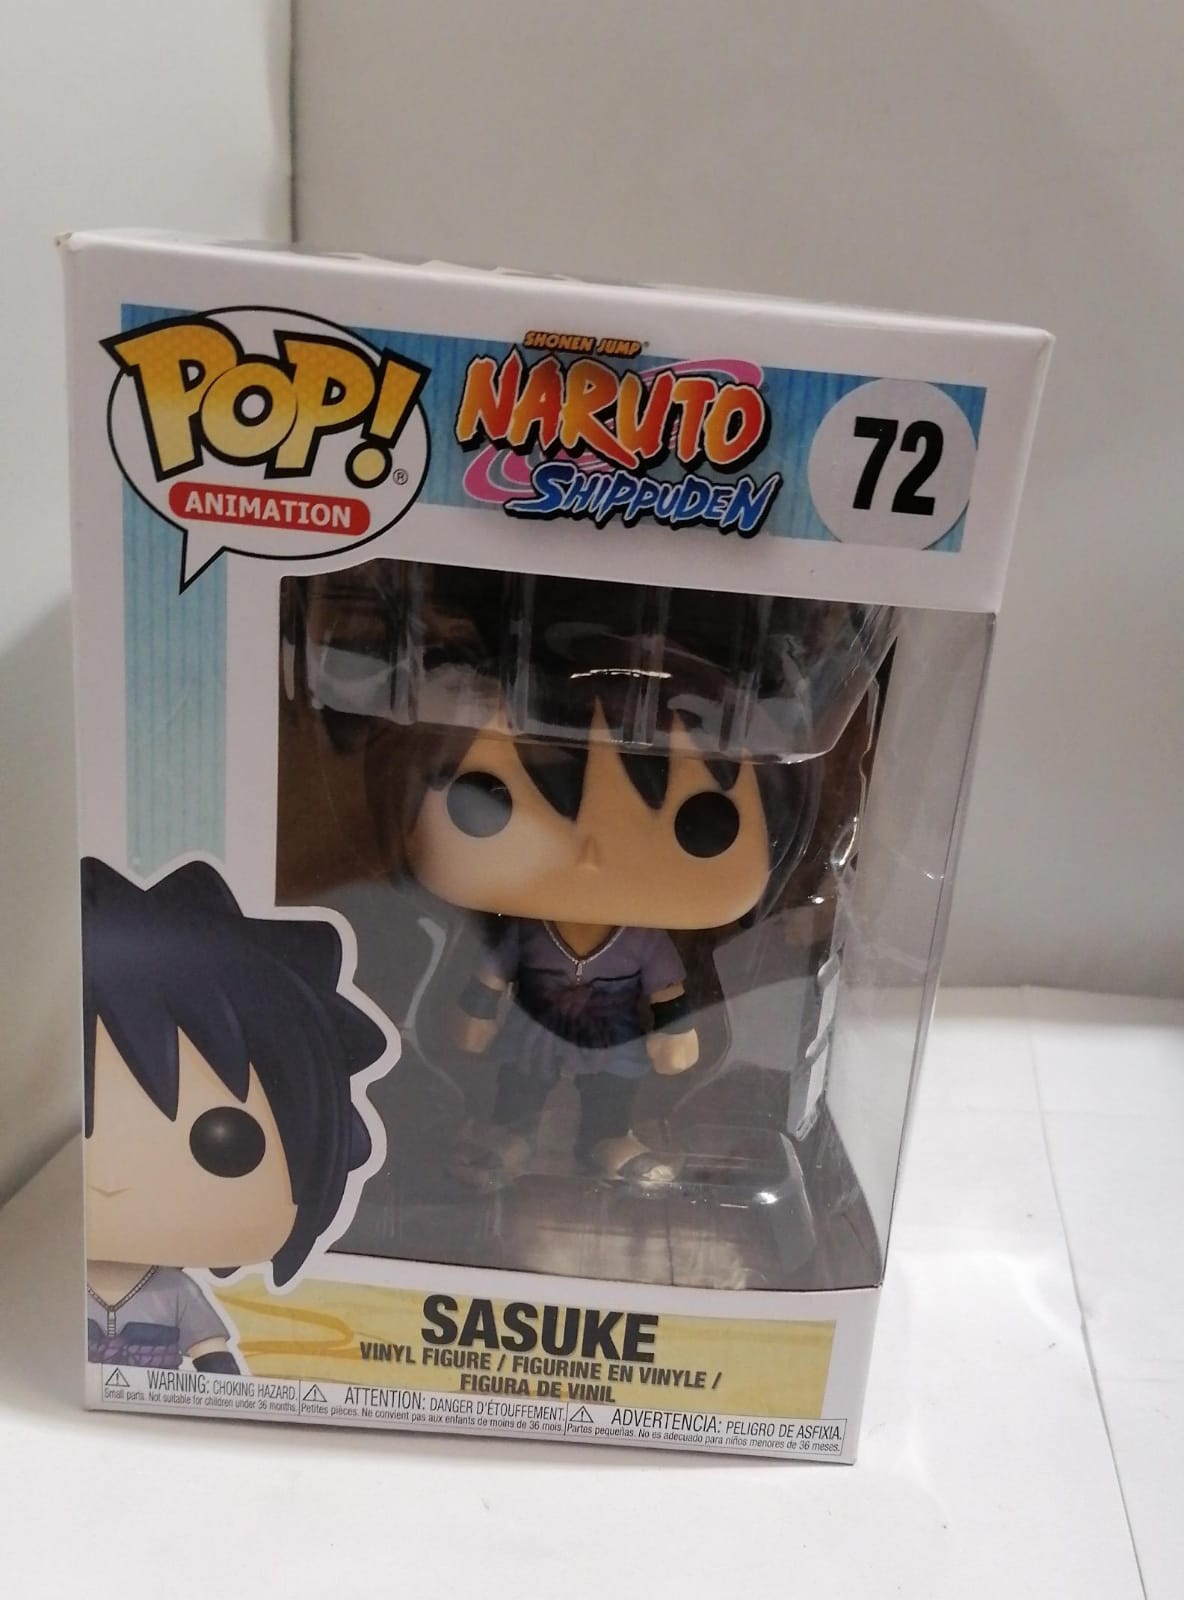 Naruto Shippuden Funko Pop Sasuke 72 [Openbox]